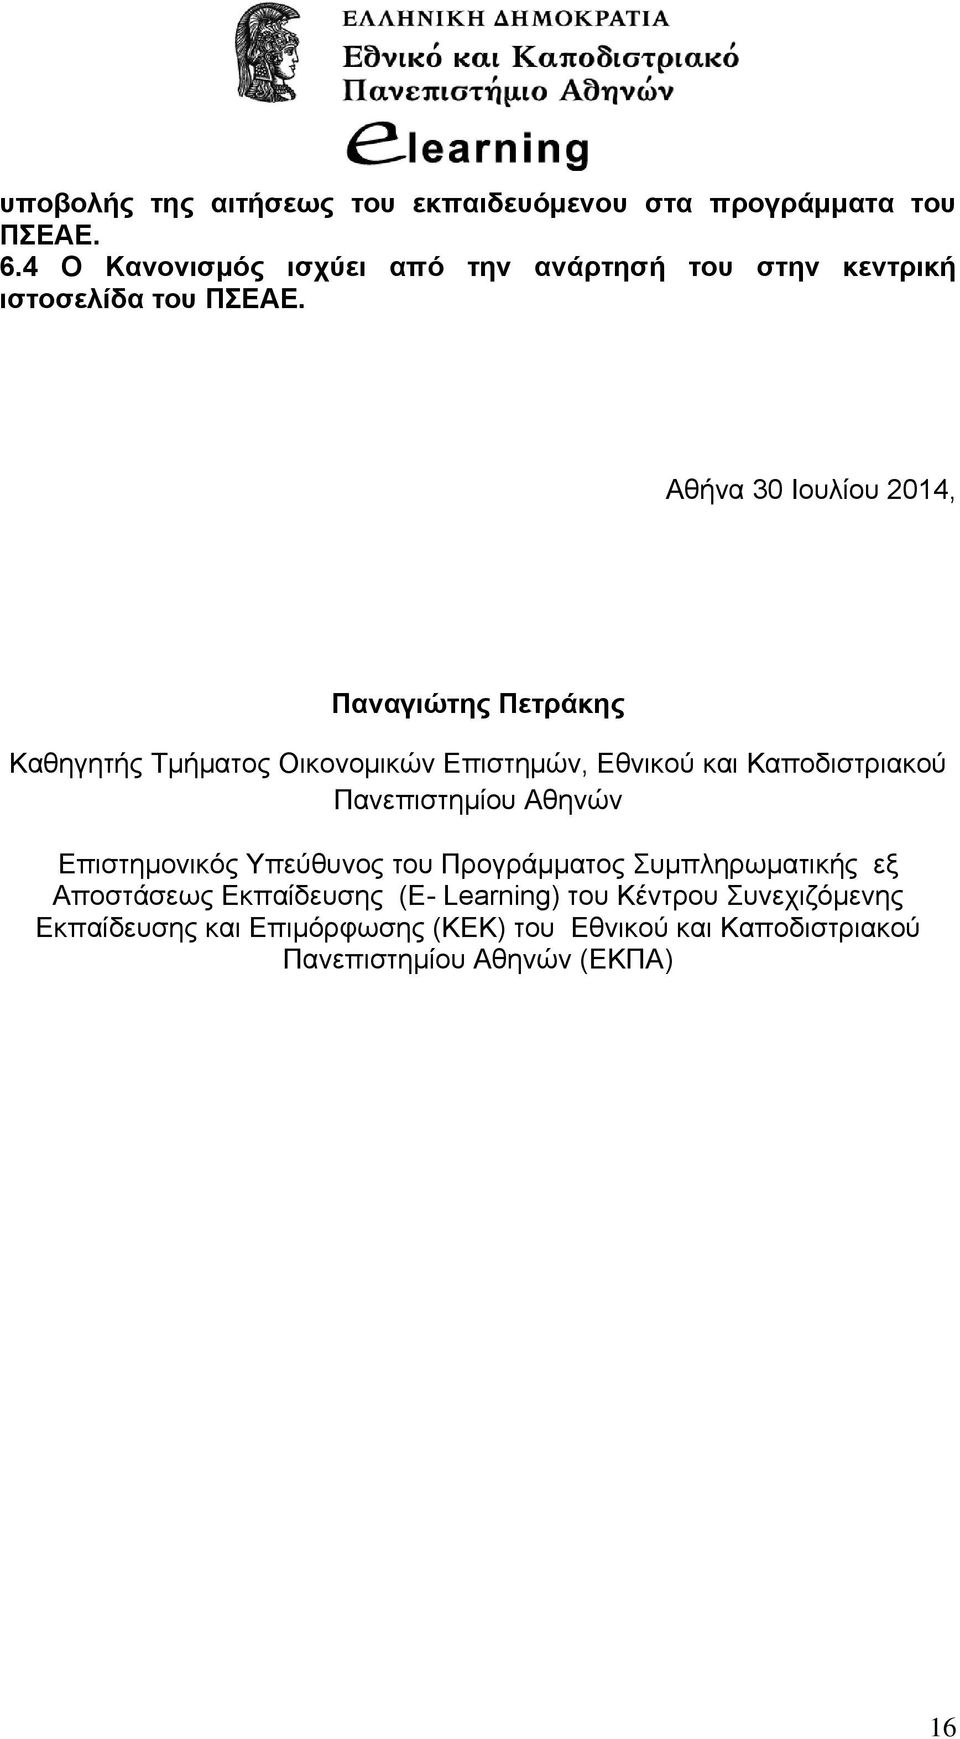 Αθήνα 30 Ιουλίου 2014, Παναγιώτης Πετράκης Καθηγητής Τμήματος Οικονομικών Επιστημών, Εθνικού και Καποδιστριακού